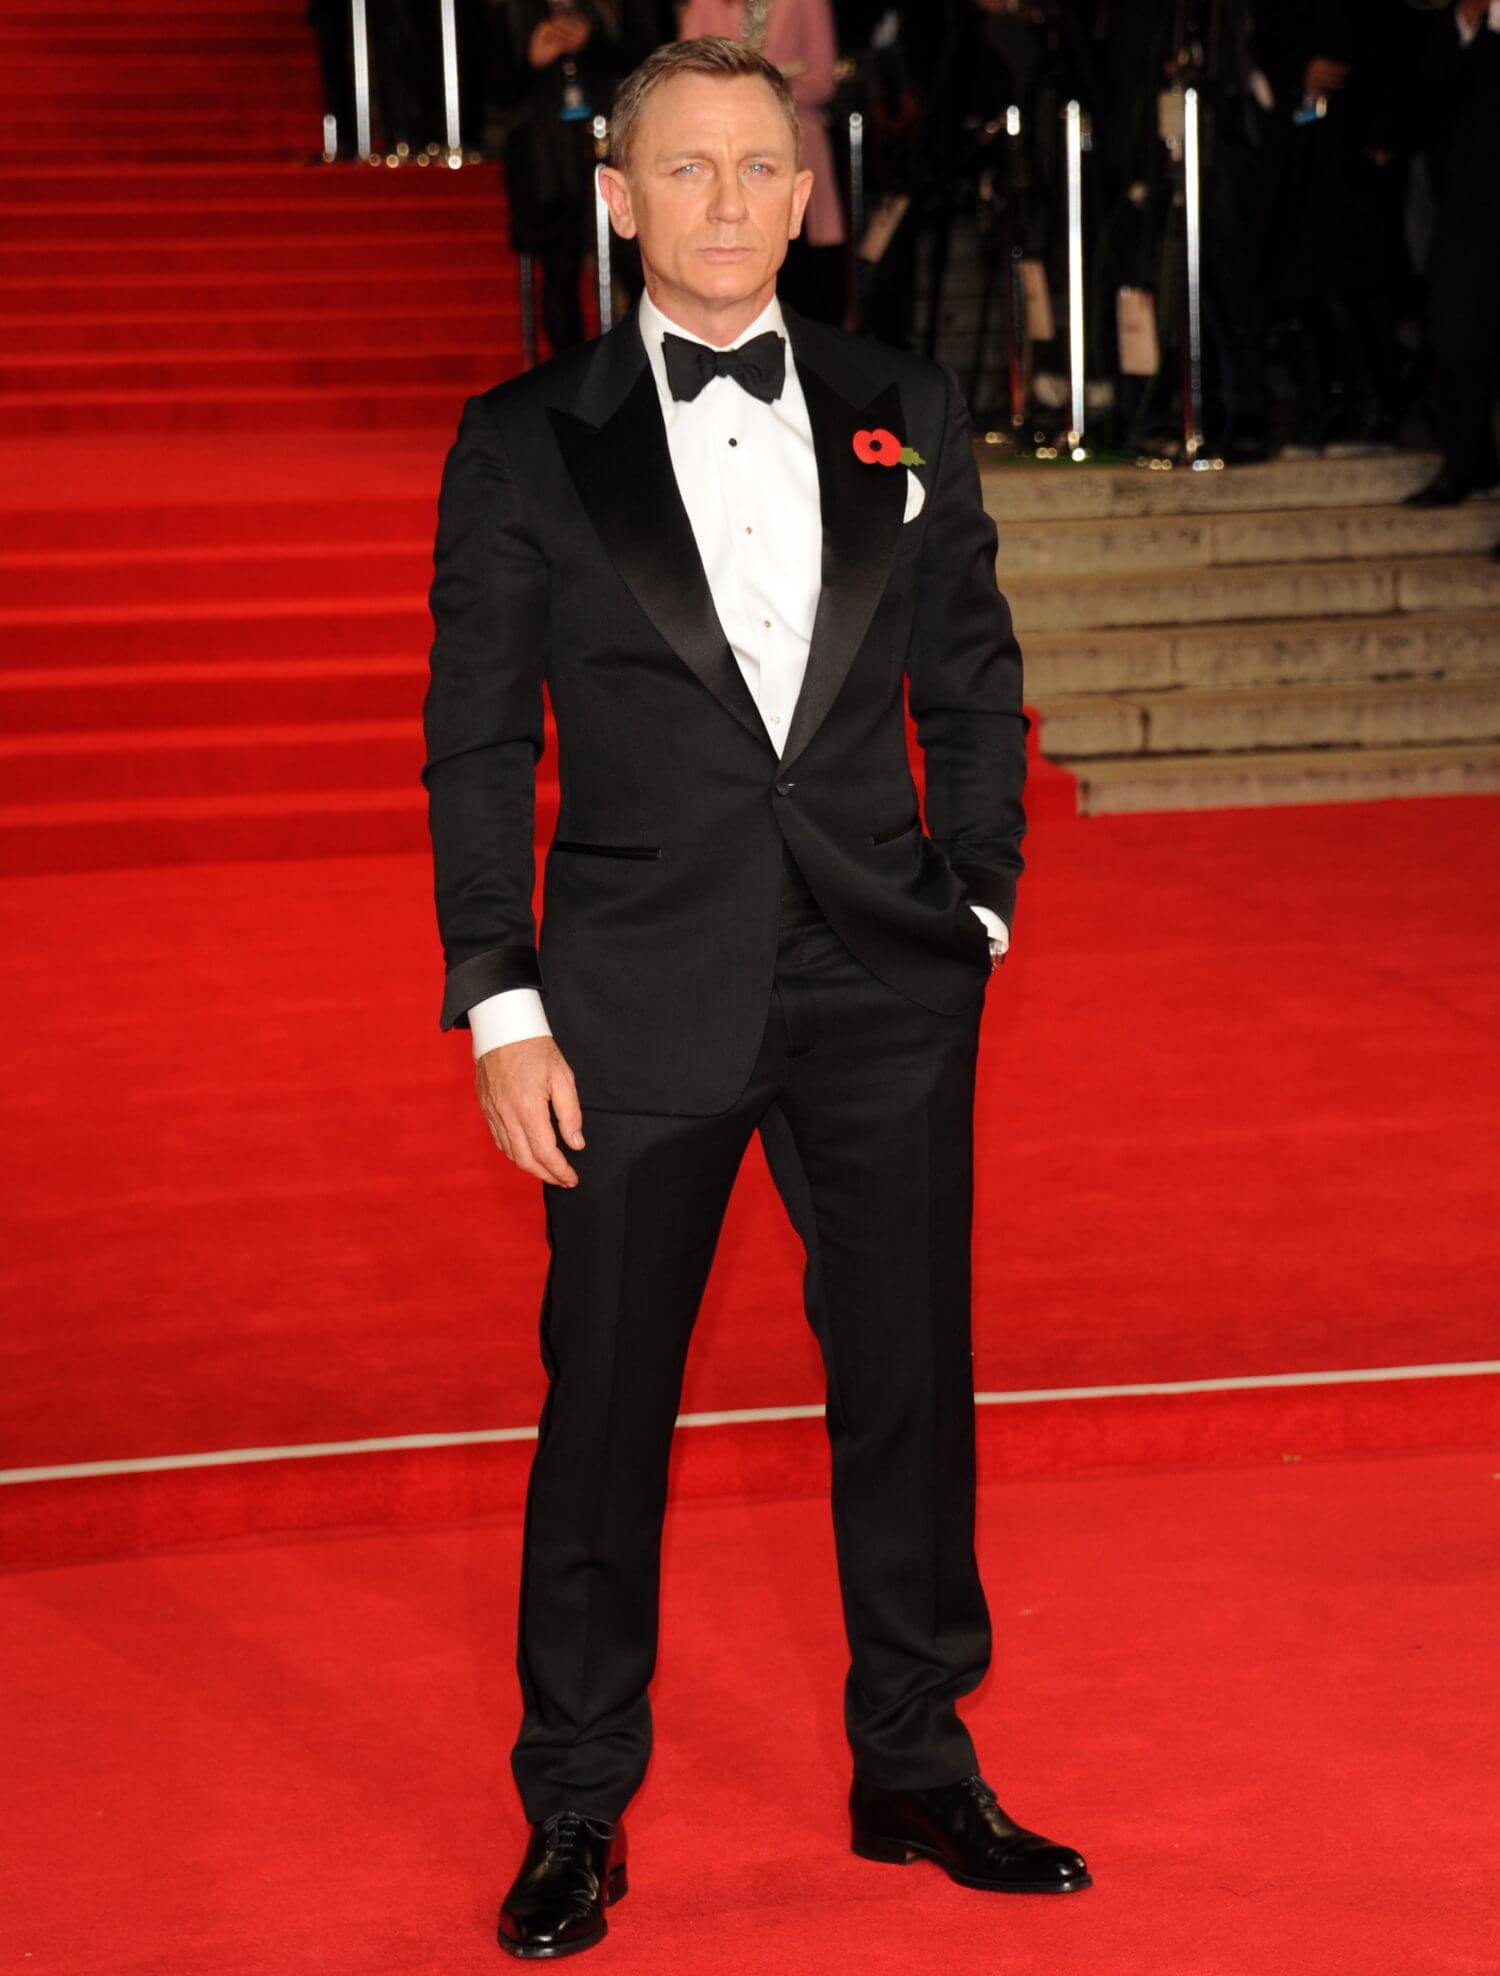 ダニエルクレイグのスーツスタイル魅力を解剖 007ジェームズボンド メンズファッションメディア Www Medinatheatre